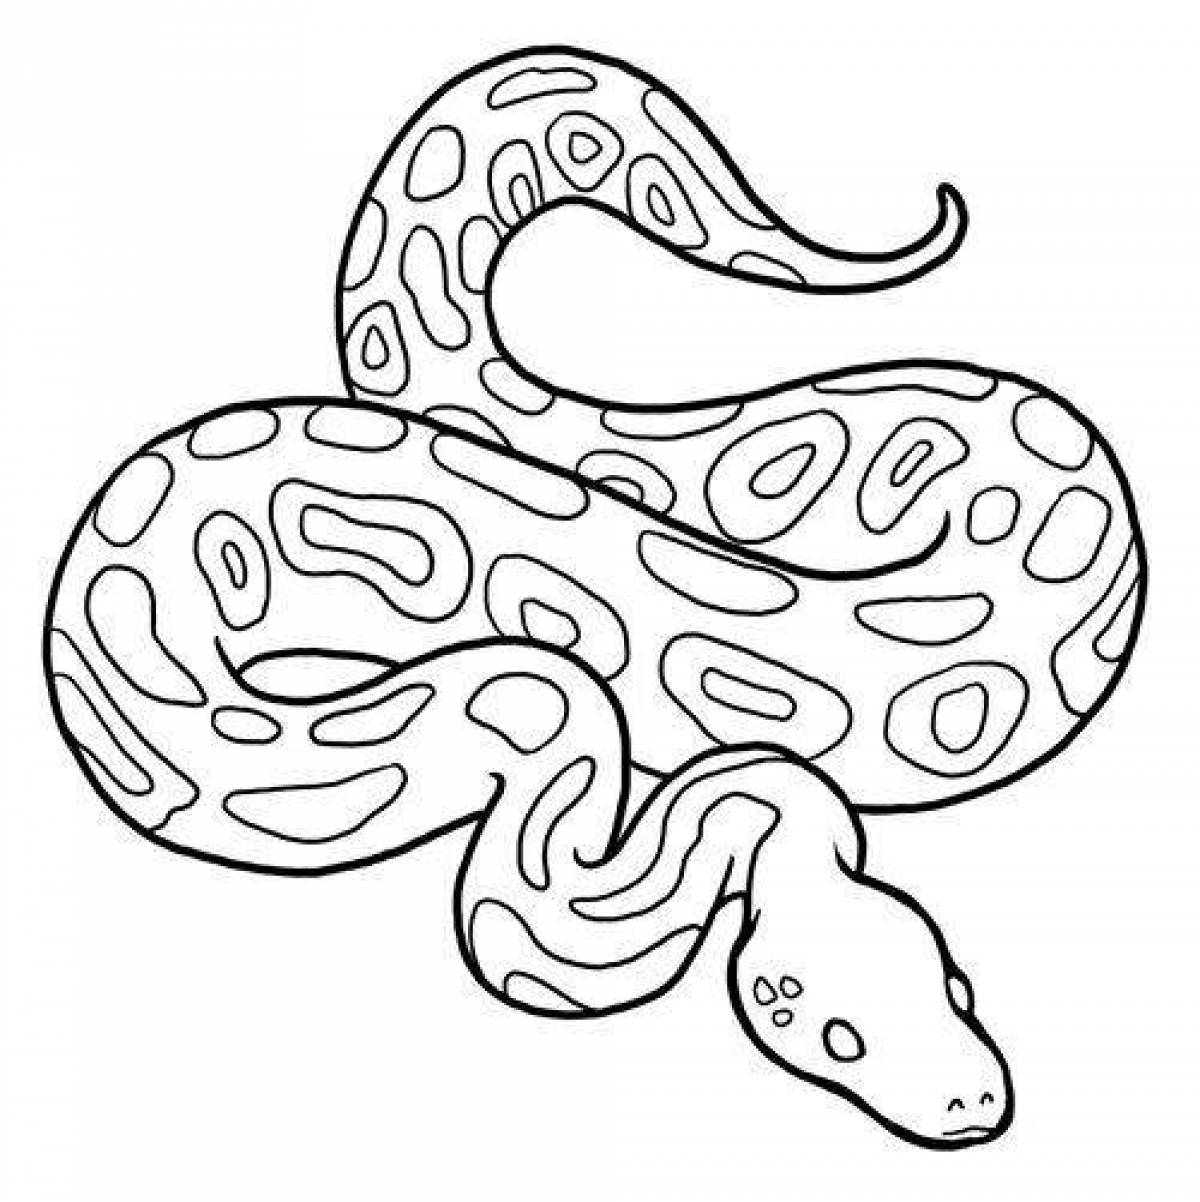 Python #18